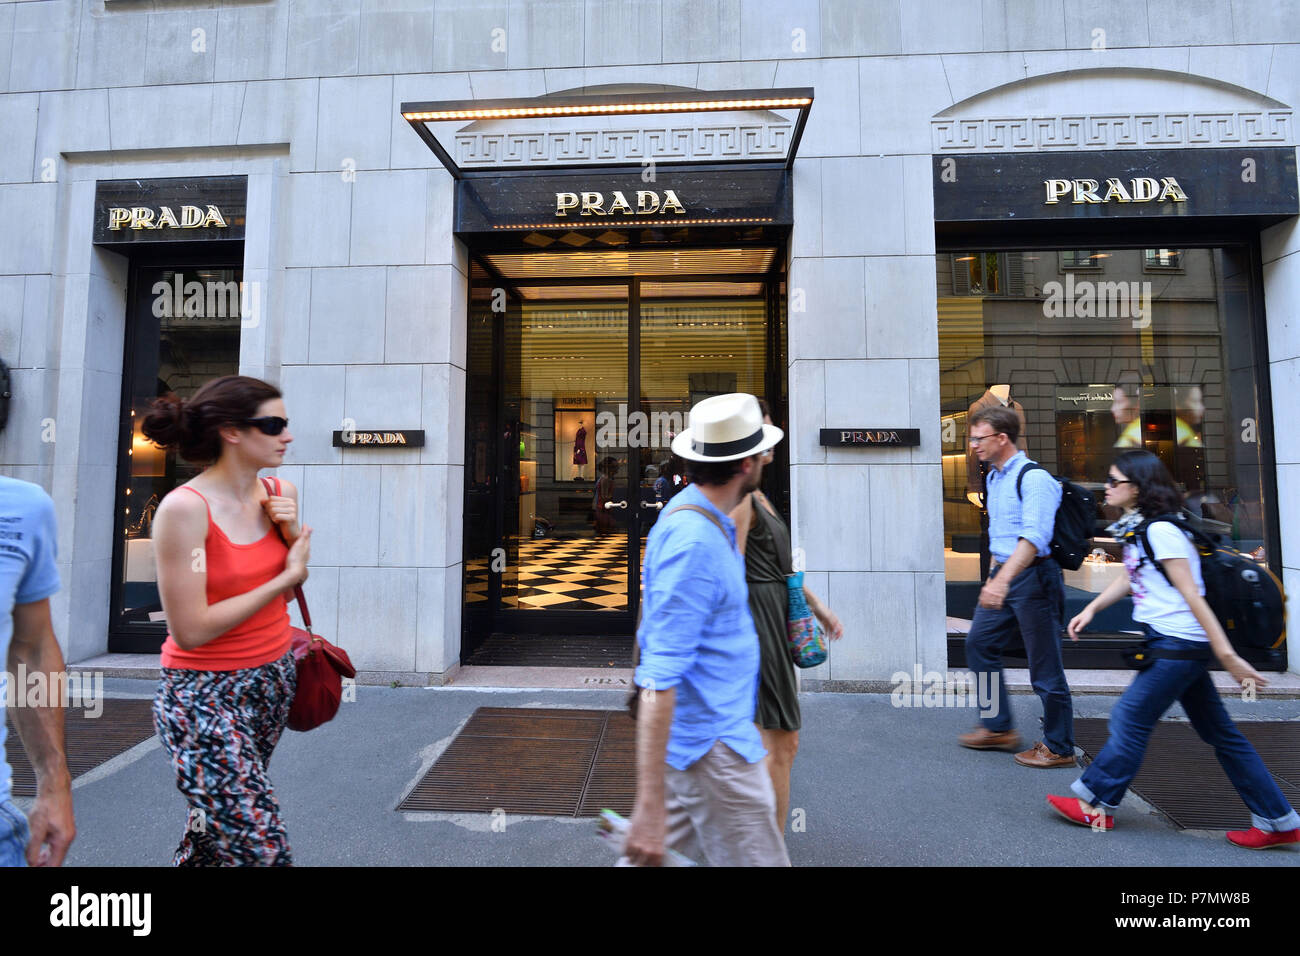 Italy, Lombardy, Milan, Fashion Quadrilateral, Via della Spiga, Prada Store Stock Photo